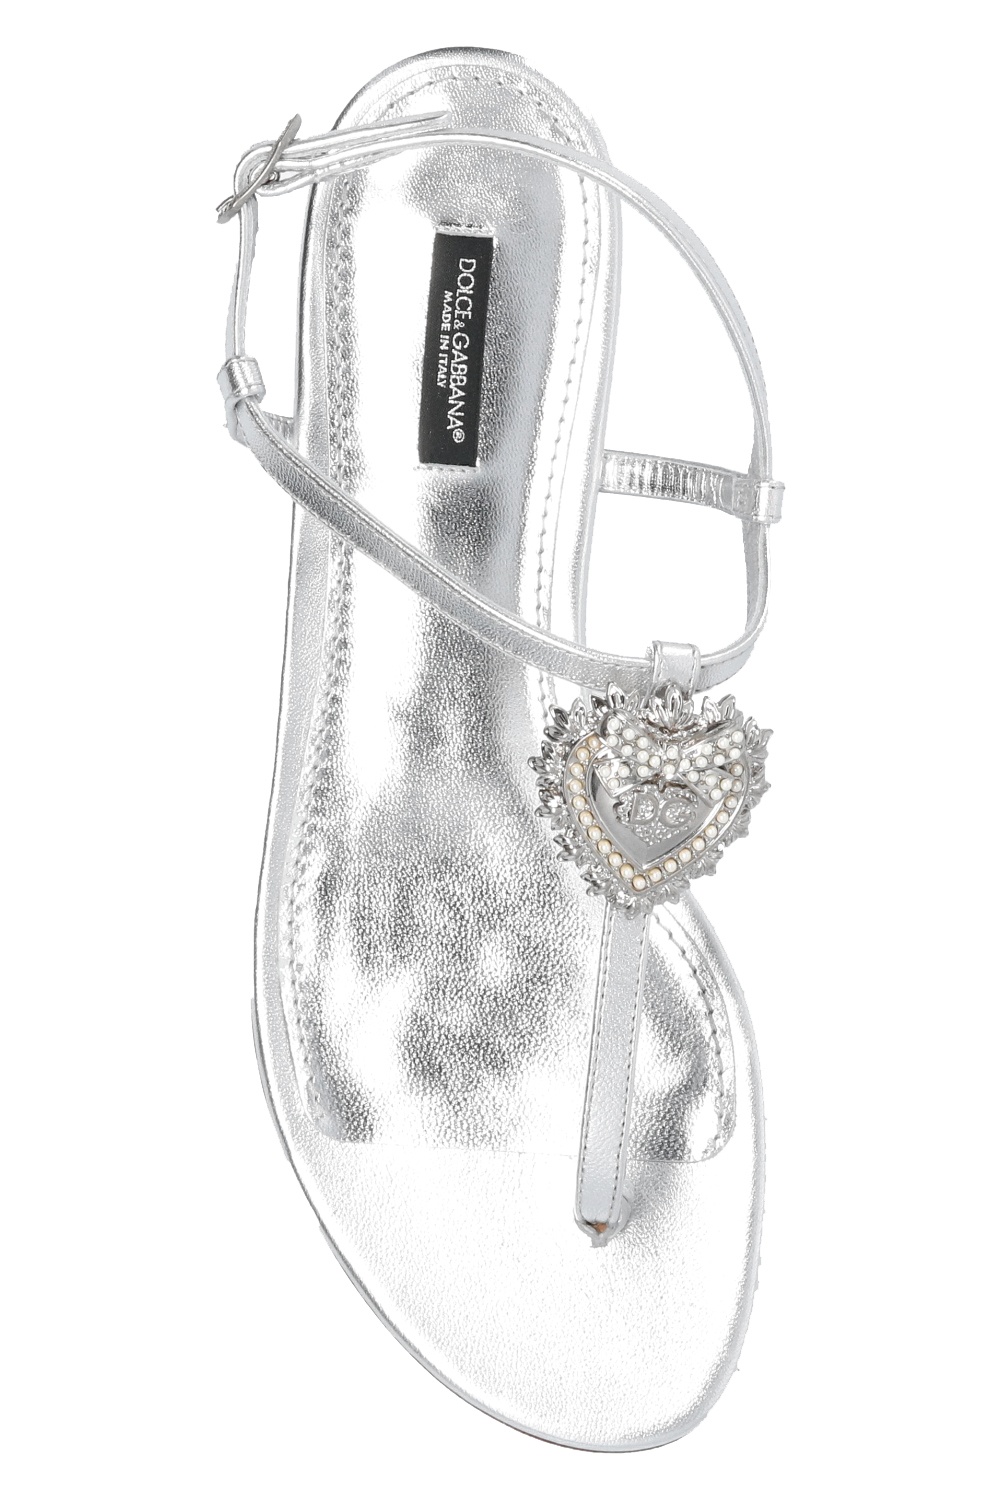 Dolce & Gabbana Crystal Embellished Sandals | Lyst